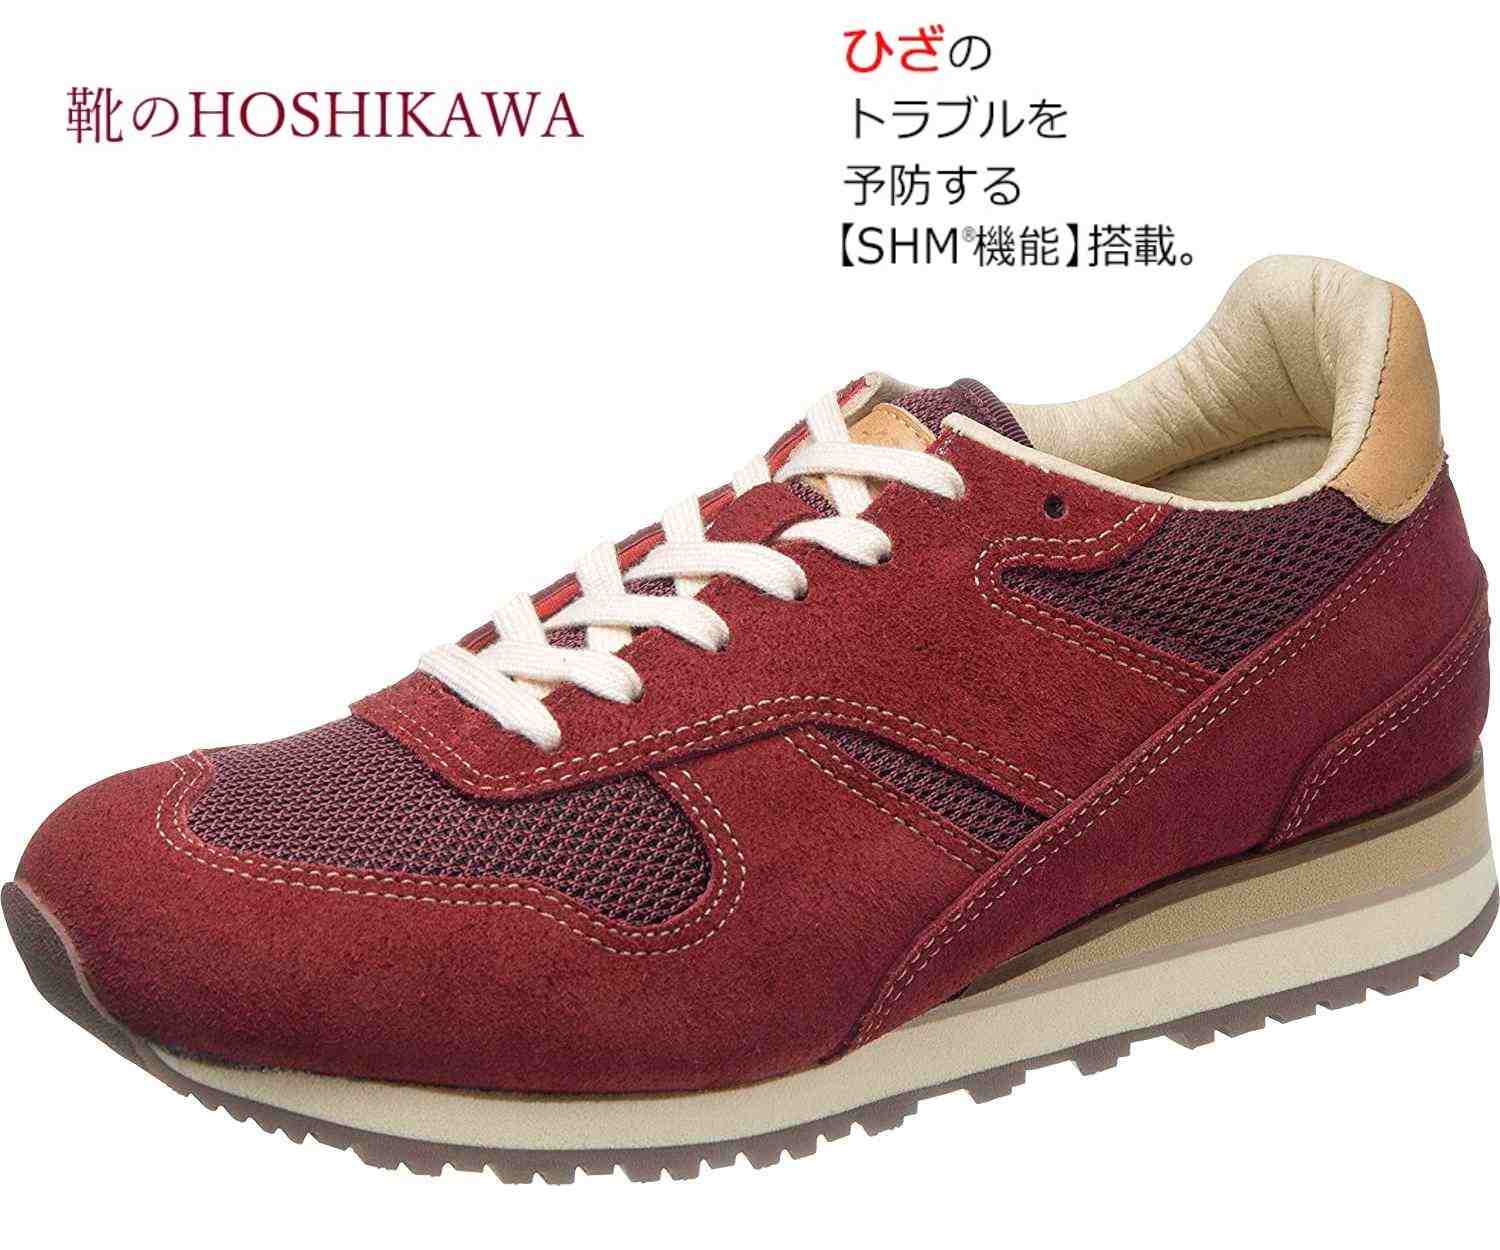 魅了 靴のhoshikawa Medical Walk Rw L011 アサヒ メディカルウォーク22cm 25cm Eeeレディース ワインカジュアルシューズ レースアップ天然皮革 Shm 安いそれに目立つ Stemworldeducationalservices Com